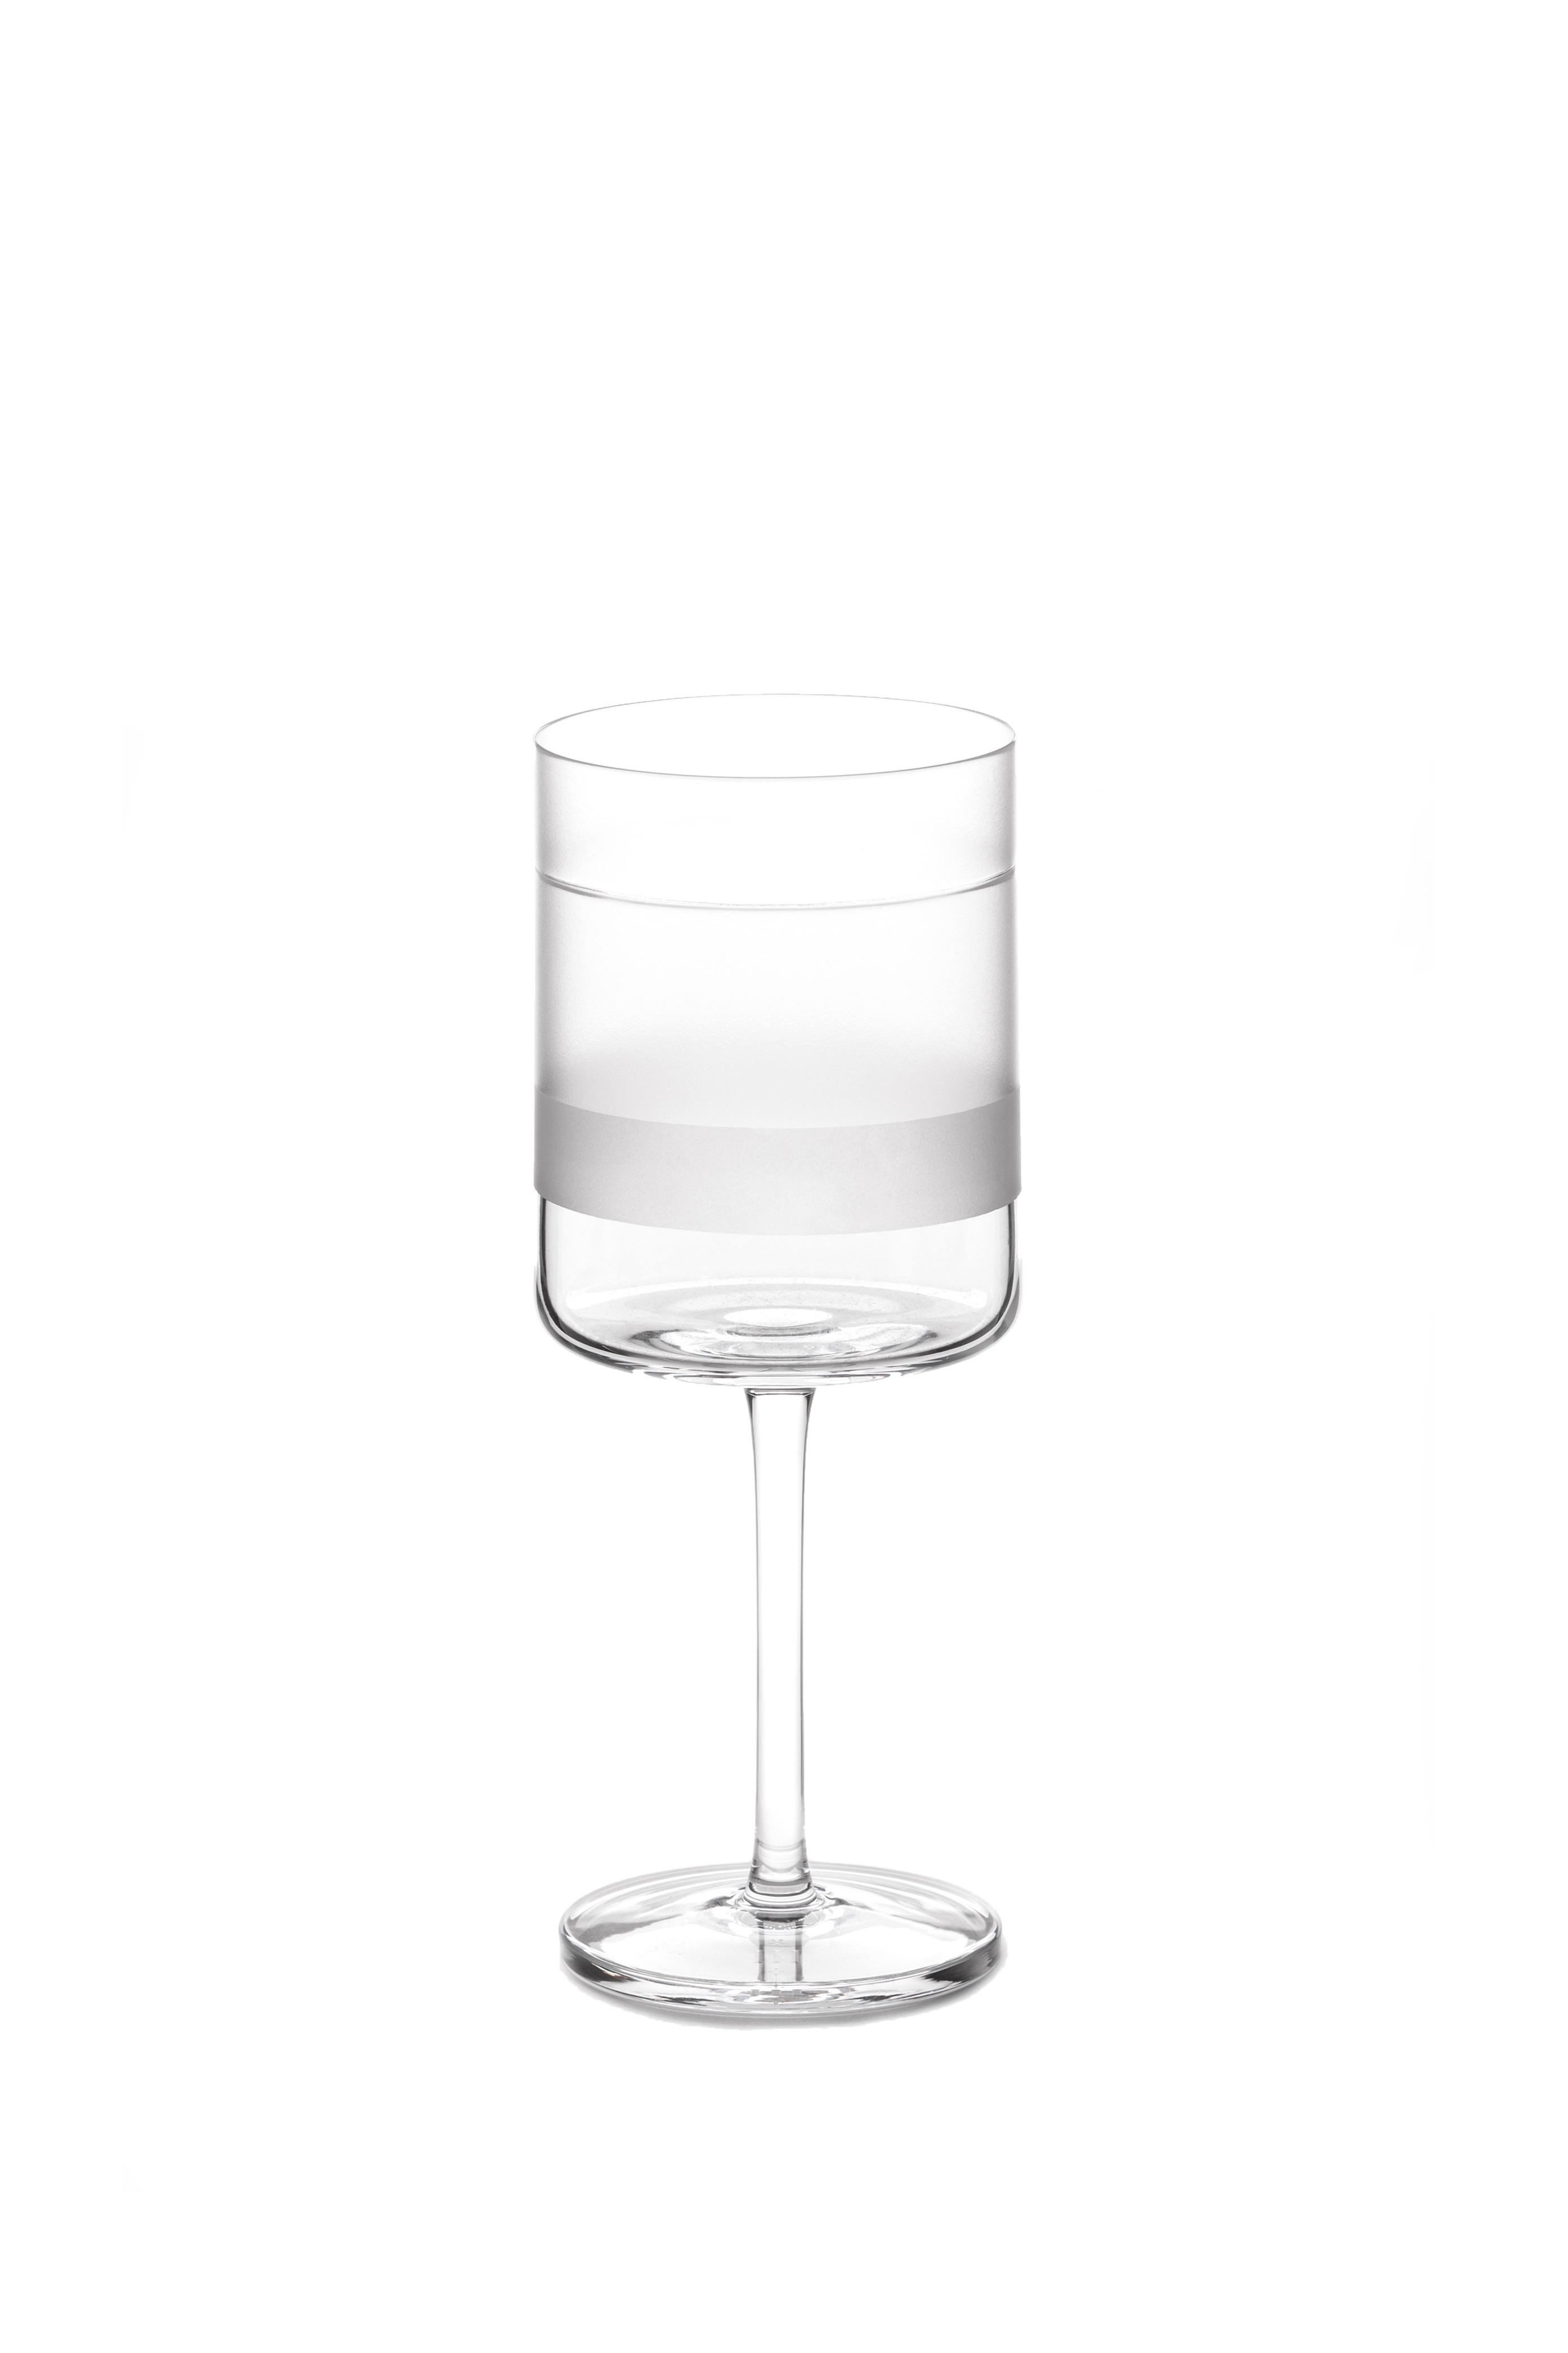 Ein handgefertigtes Rotweinglas
Ein Glas, das von Scholten & Baijings als Teil unserer Serie ELEMENTS